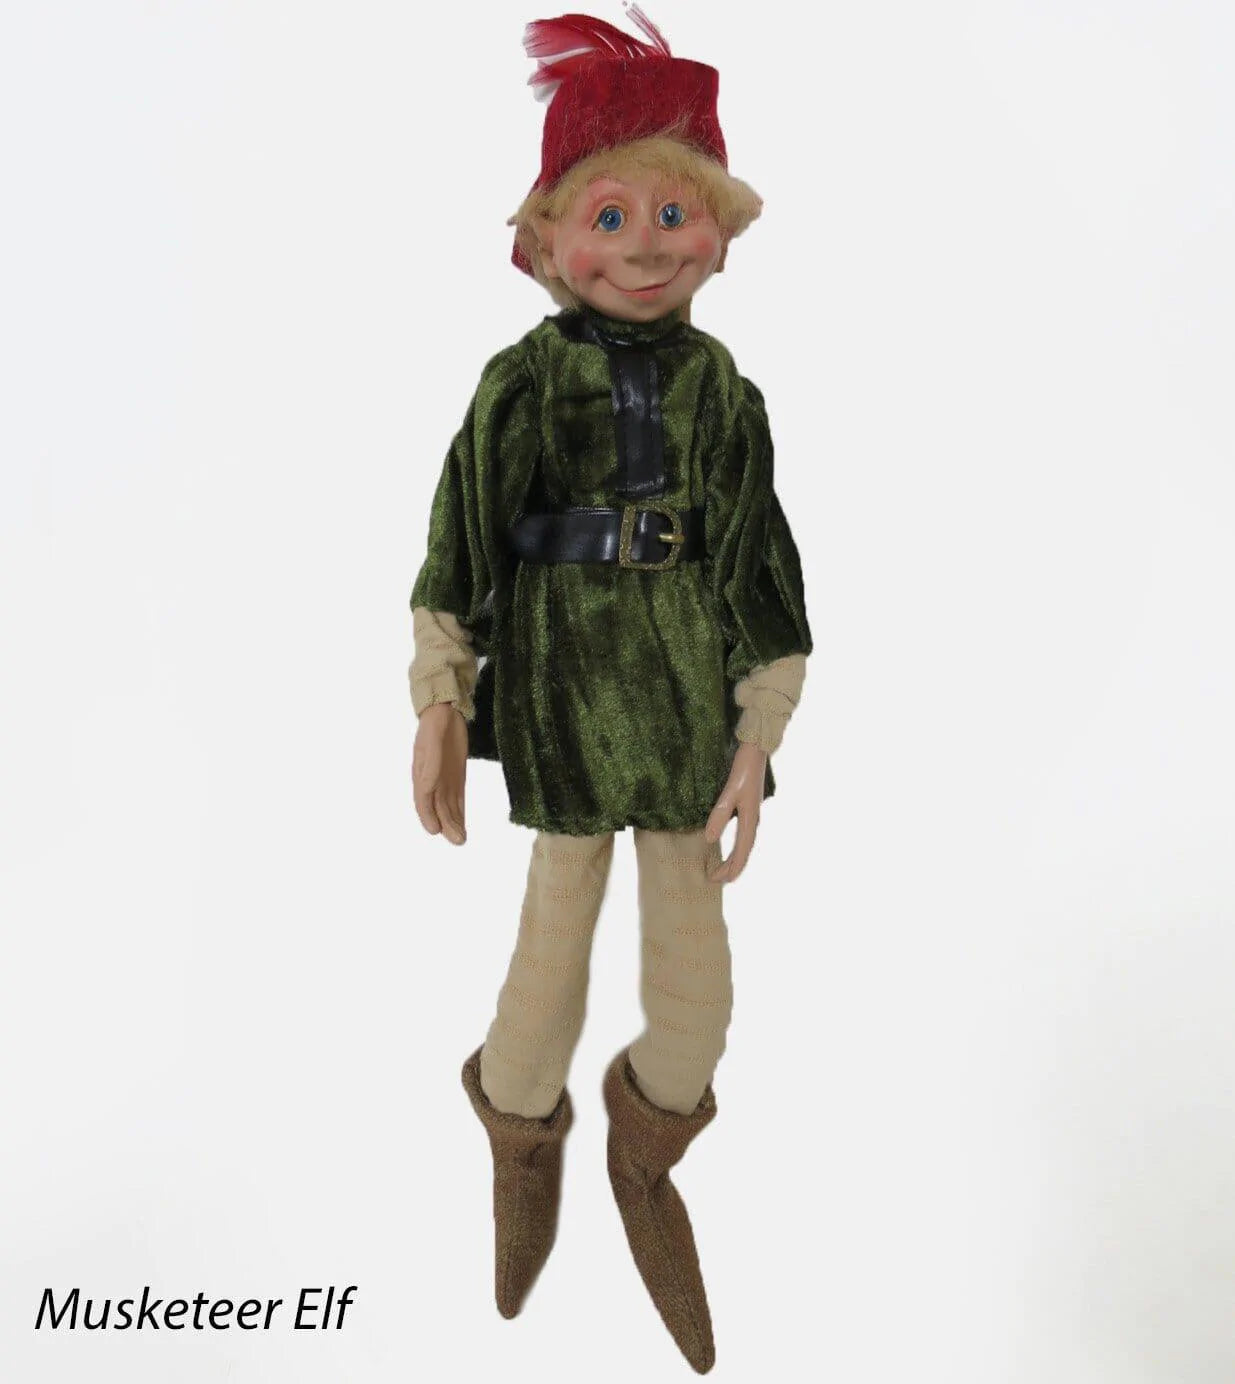 Musketeer Elf